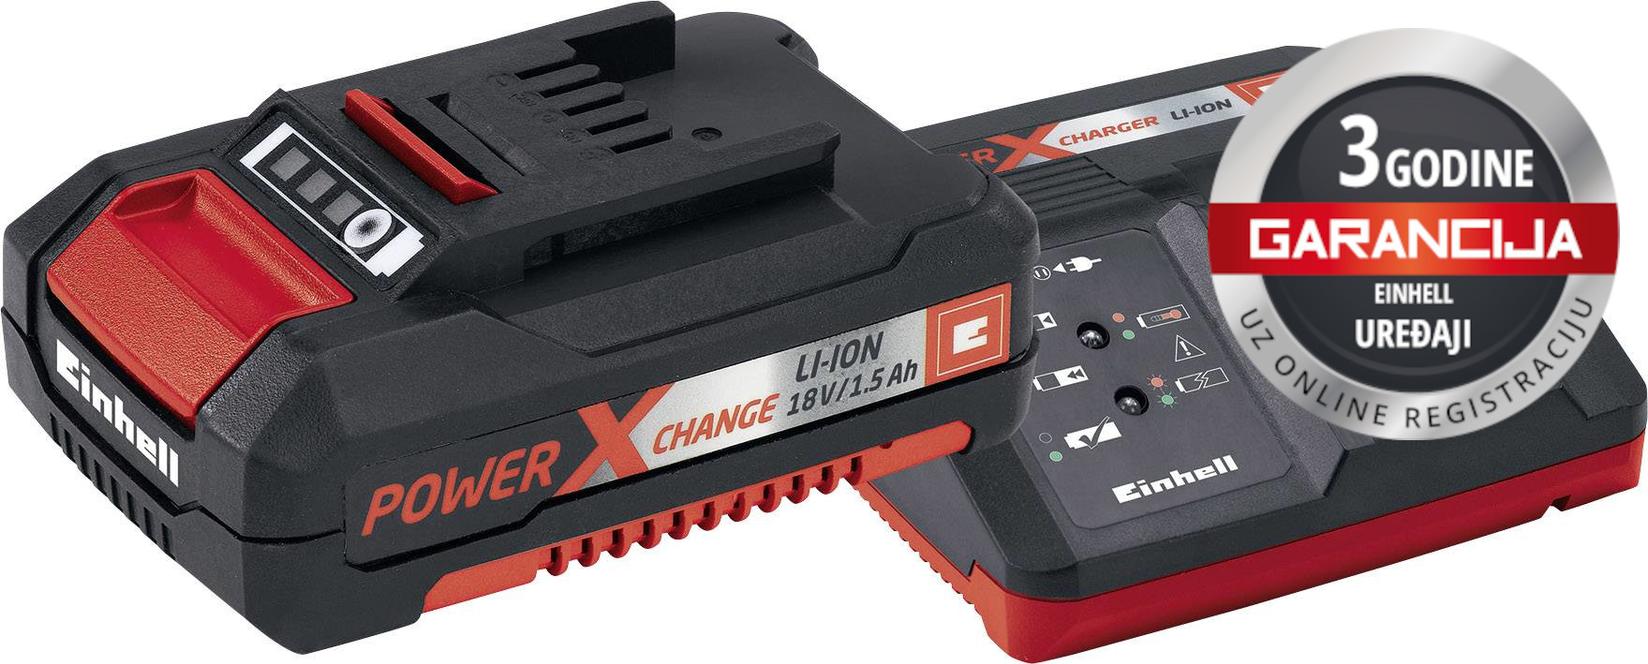 Selected image for EINHELL PXC Starter set Power-X-Change 18V 1,5Ah